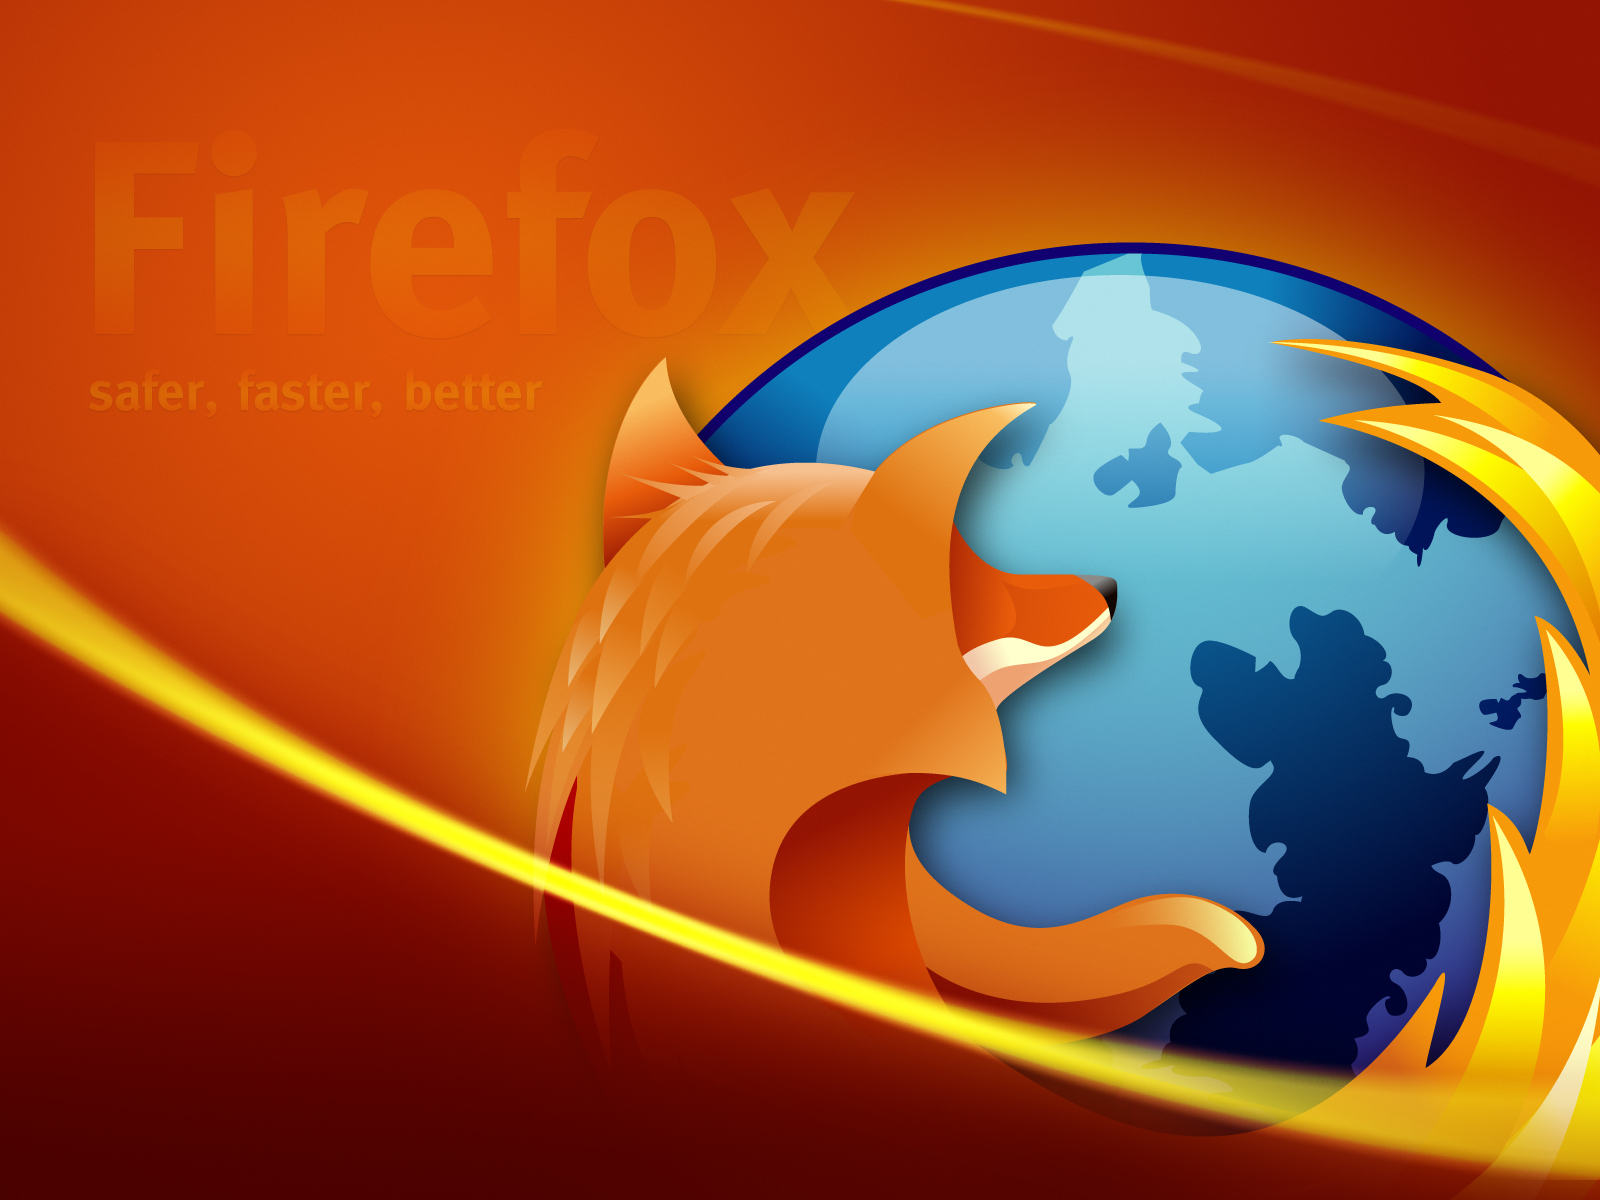 3d обои Firefox  safe, faster, better  1600х1200 # 5835